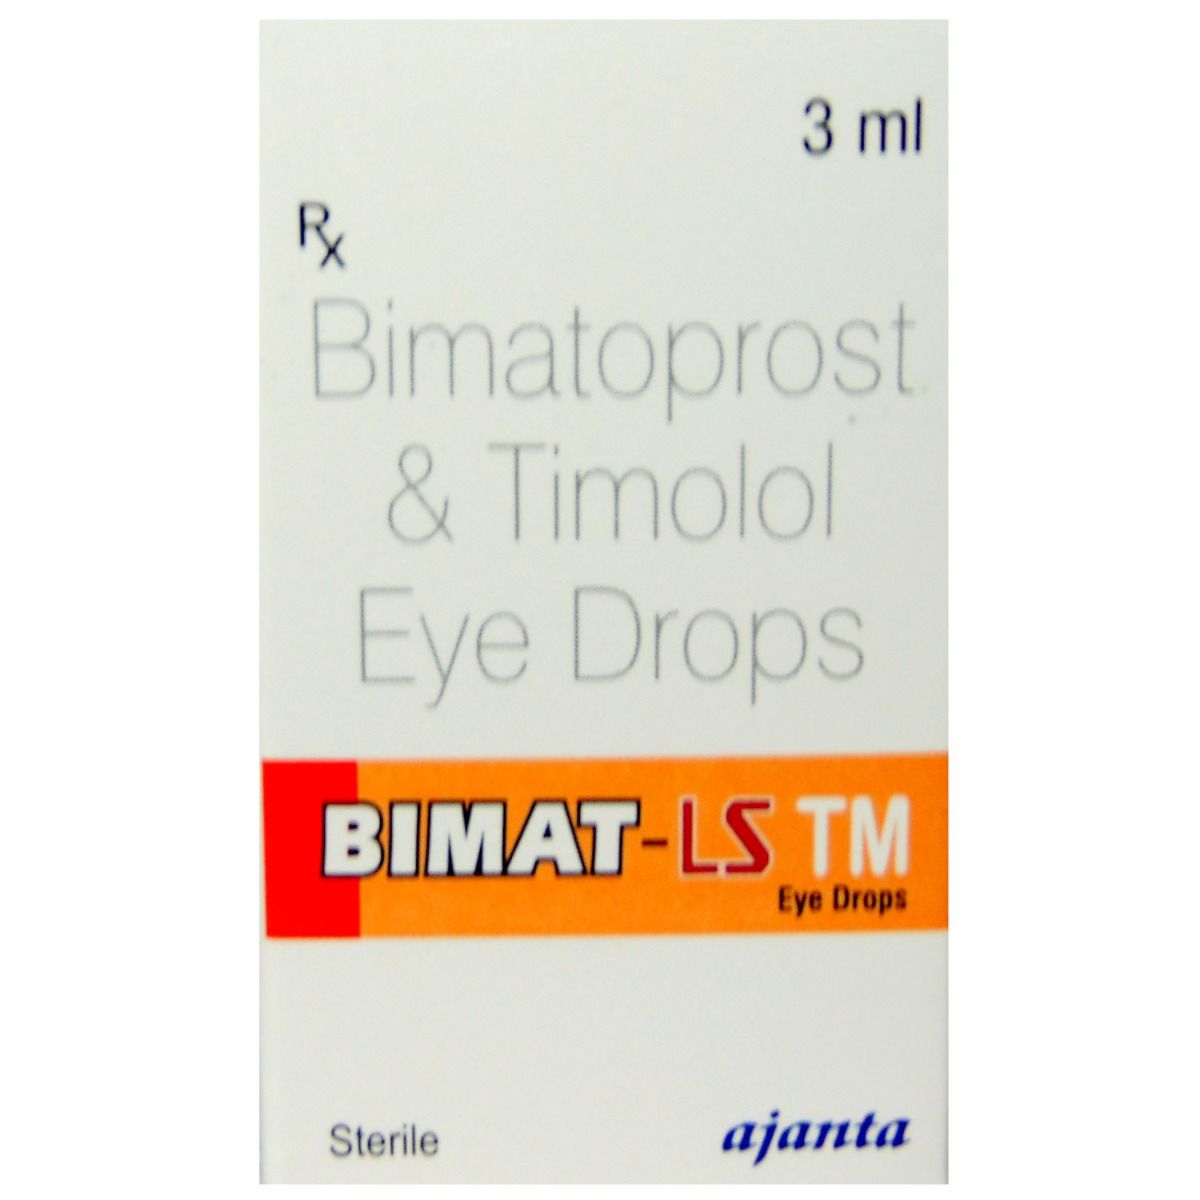 Buy Bimat LS TM Eye Drop 3 ml Online